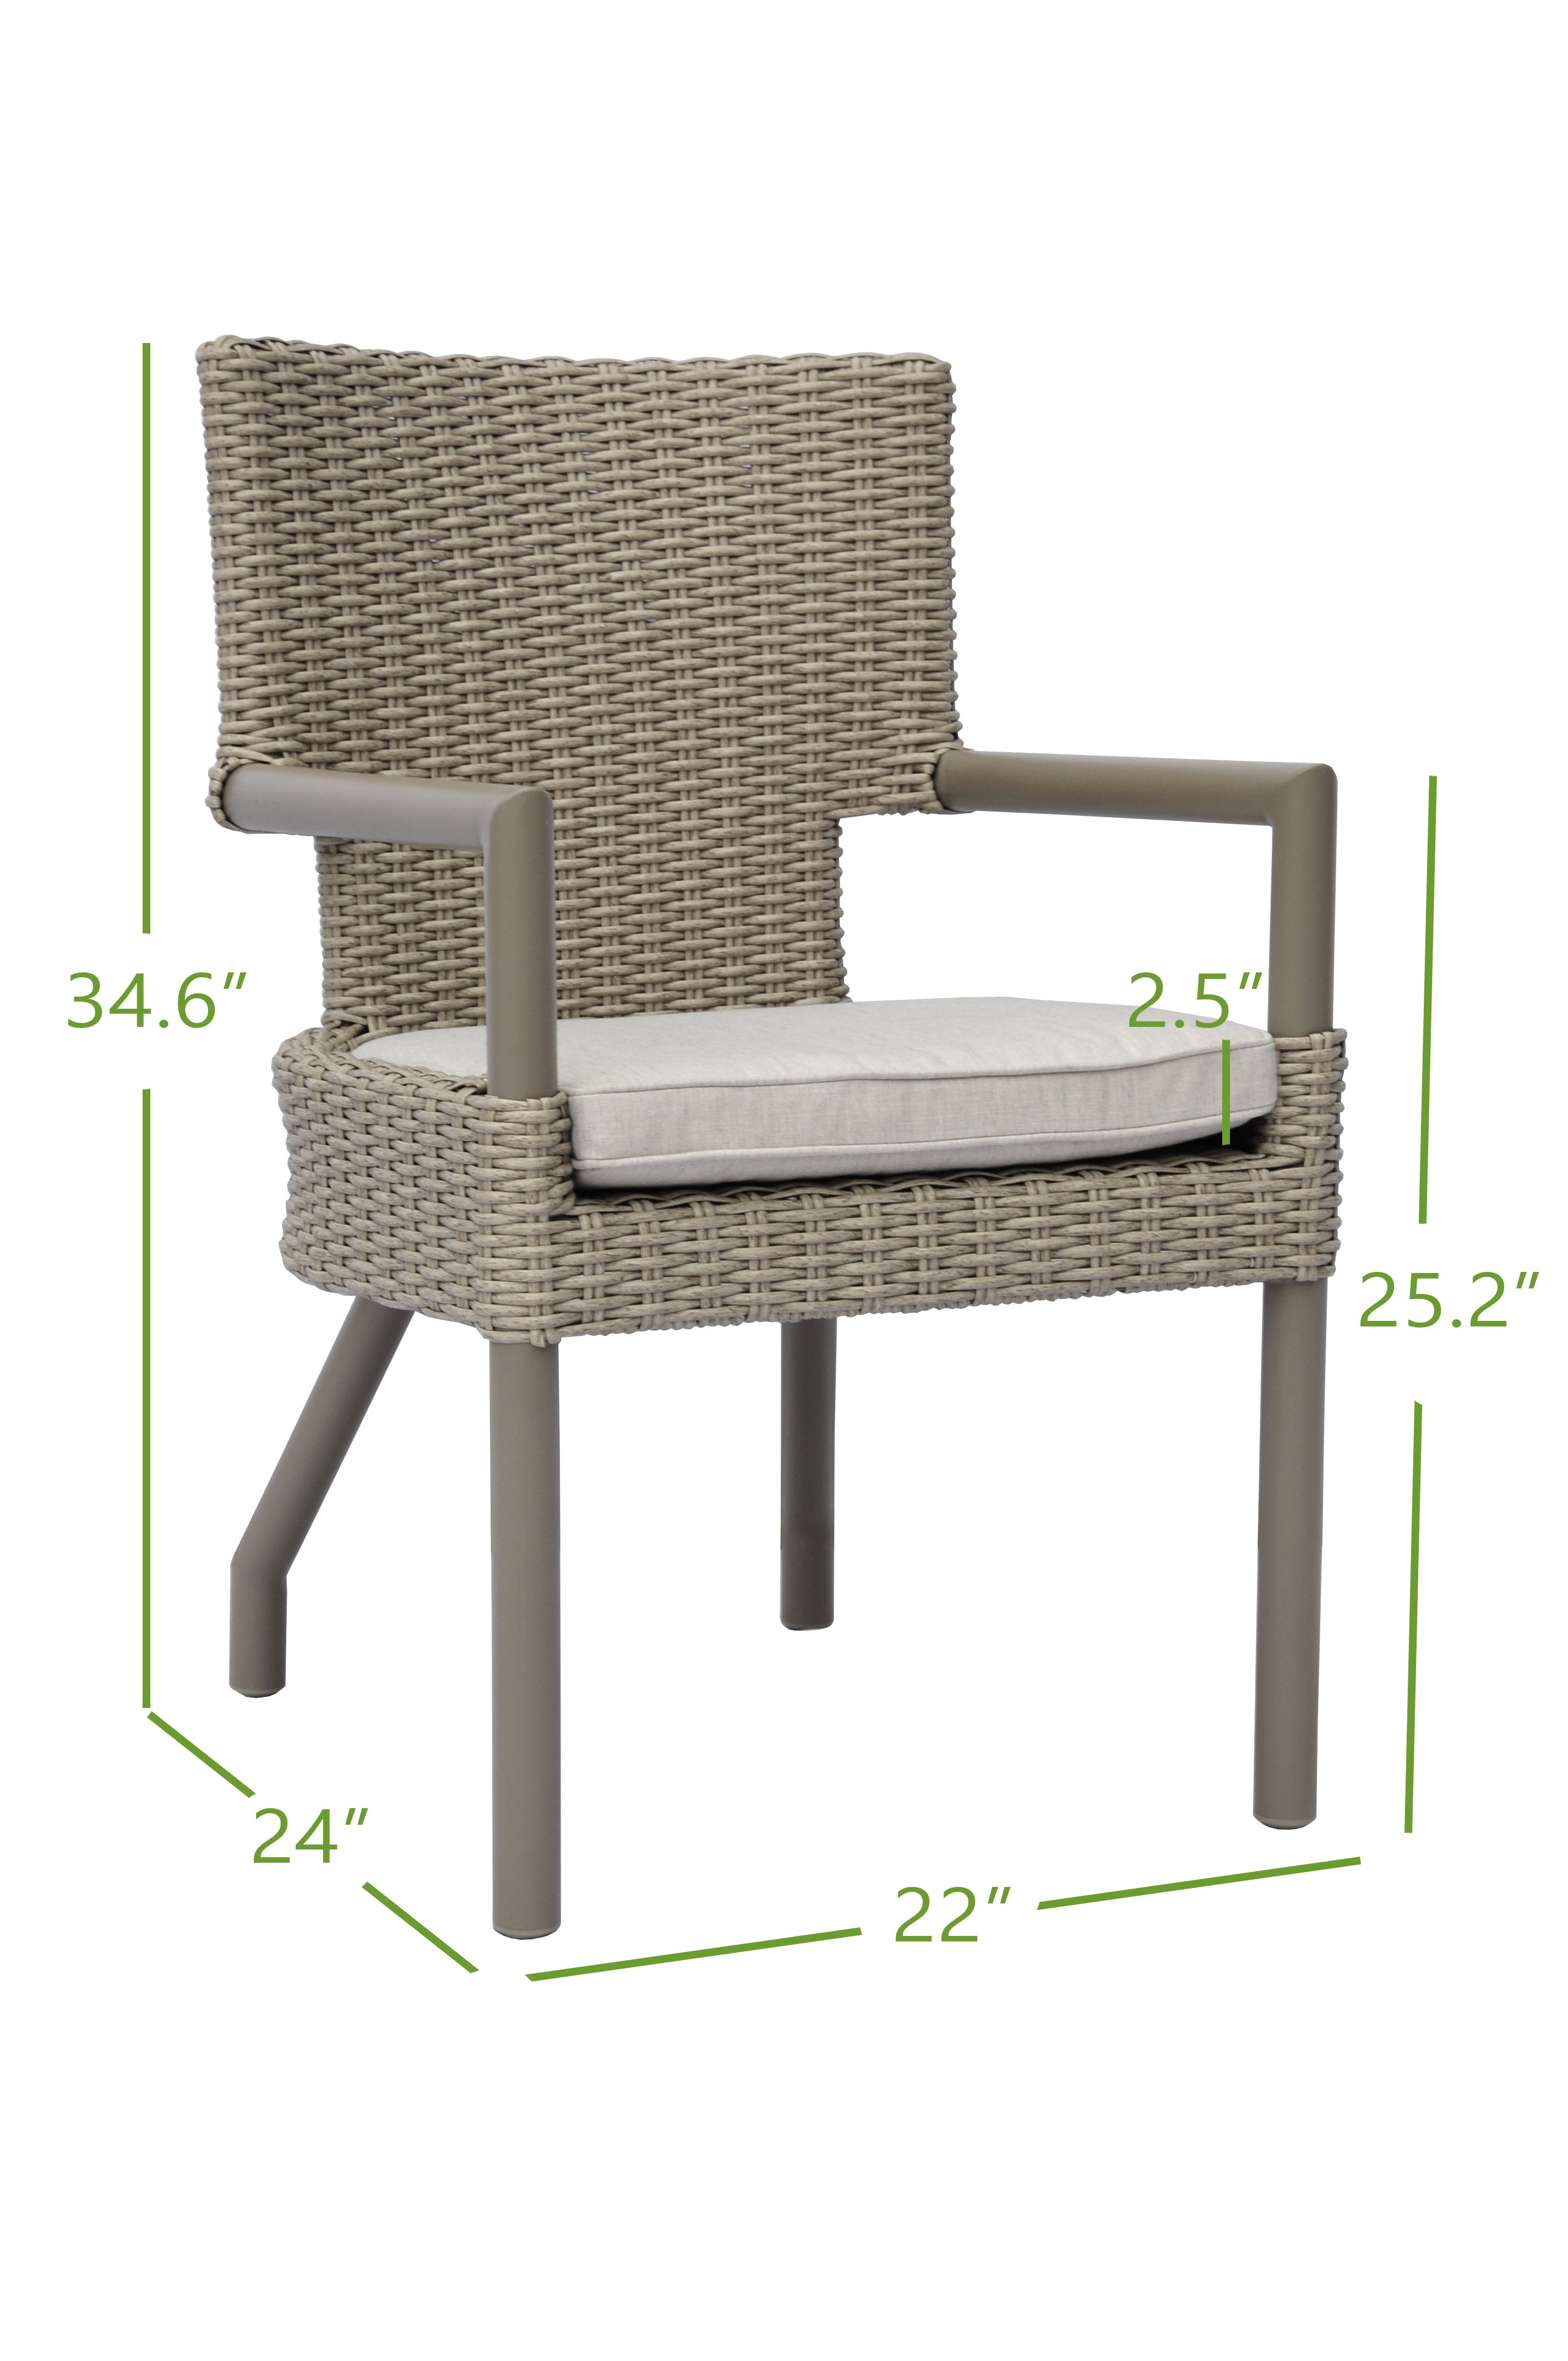 arm chair dimensions